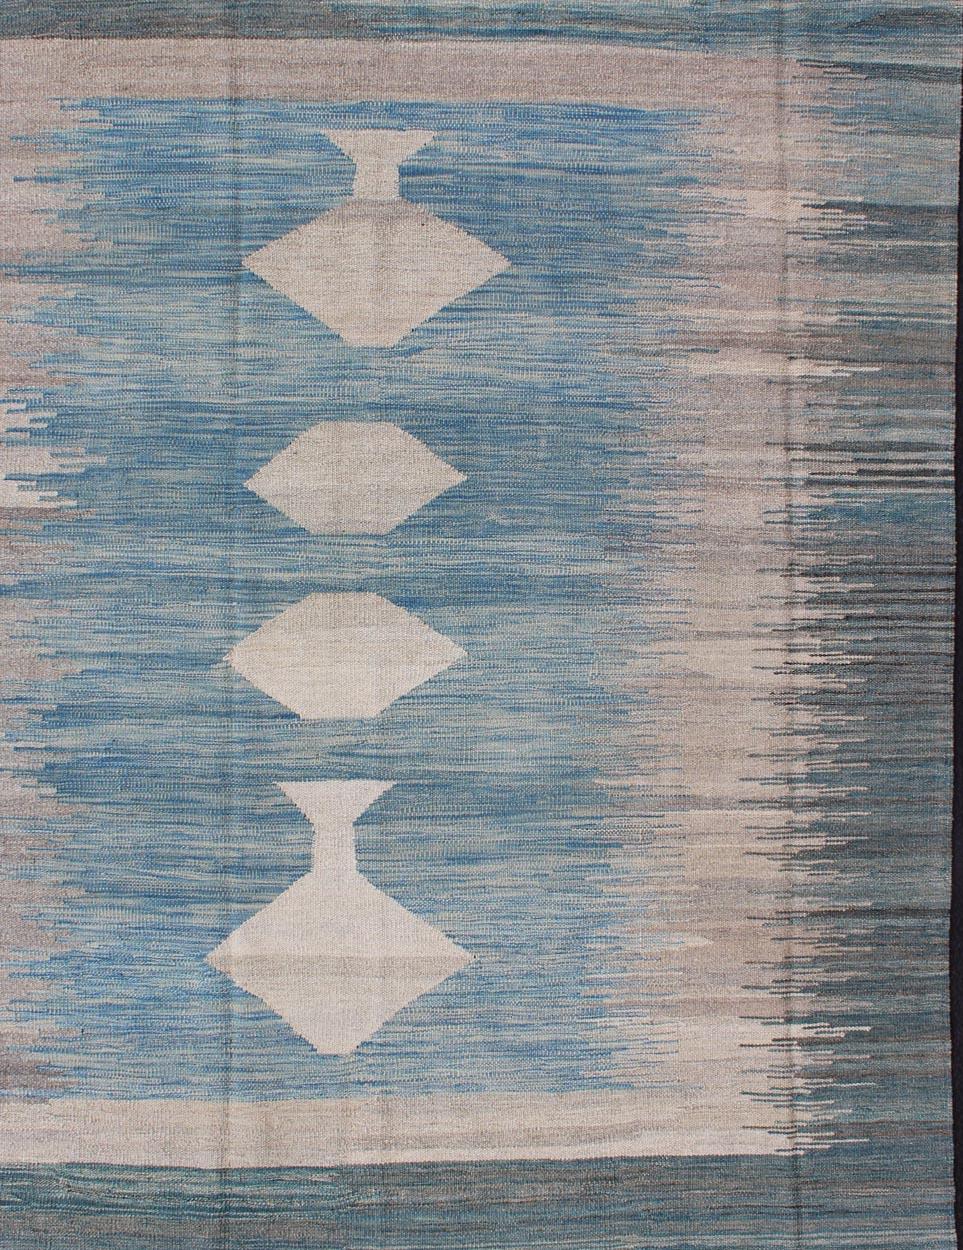 Flachgewebter Kelimteppich mit Rautenmuster in Blau-, Grau- und Grüntönen, Teppich afg-6490, Herkunftsland / Art: Afghanistan / Kelim

Dieses verspielte Stück hat ein Rautenmuster, das eine lässige und leichte Ausstrahlung hat. Dieser in Blau-,